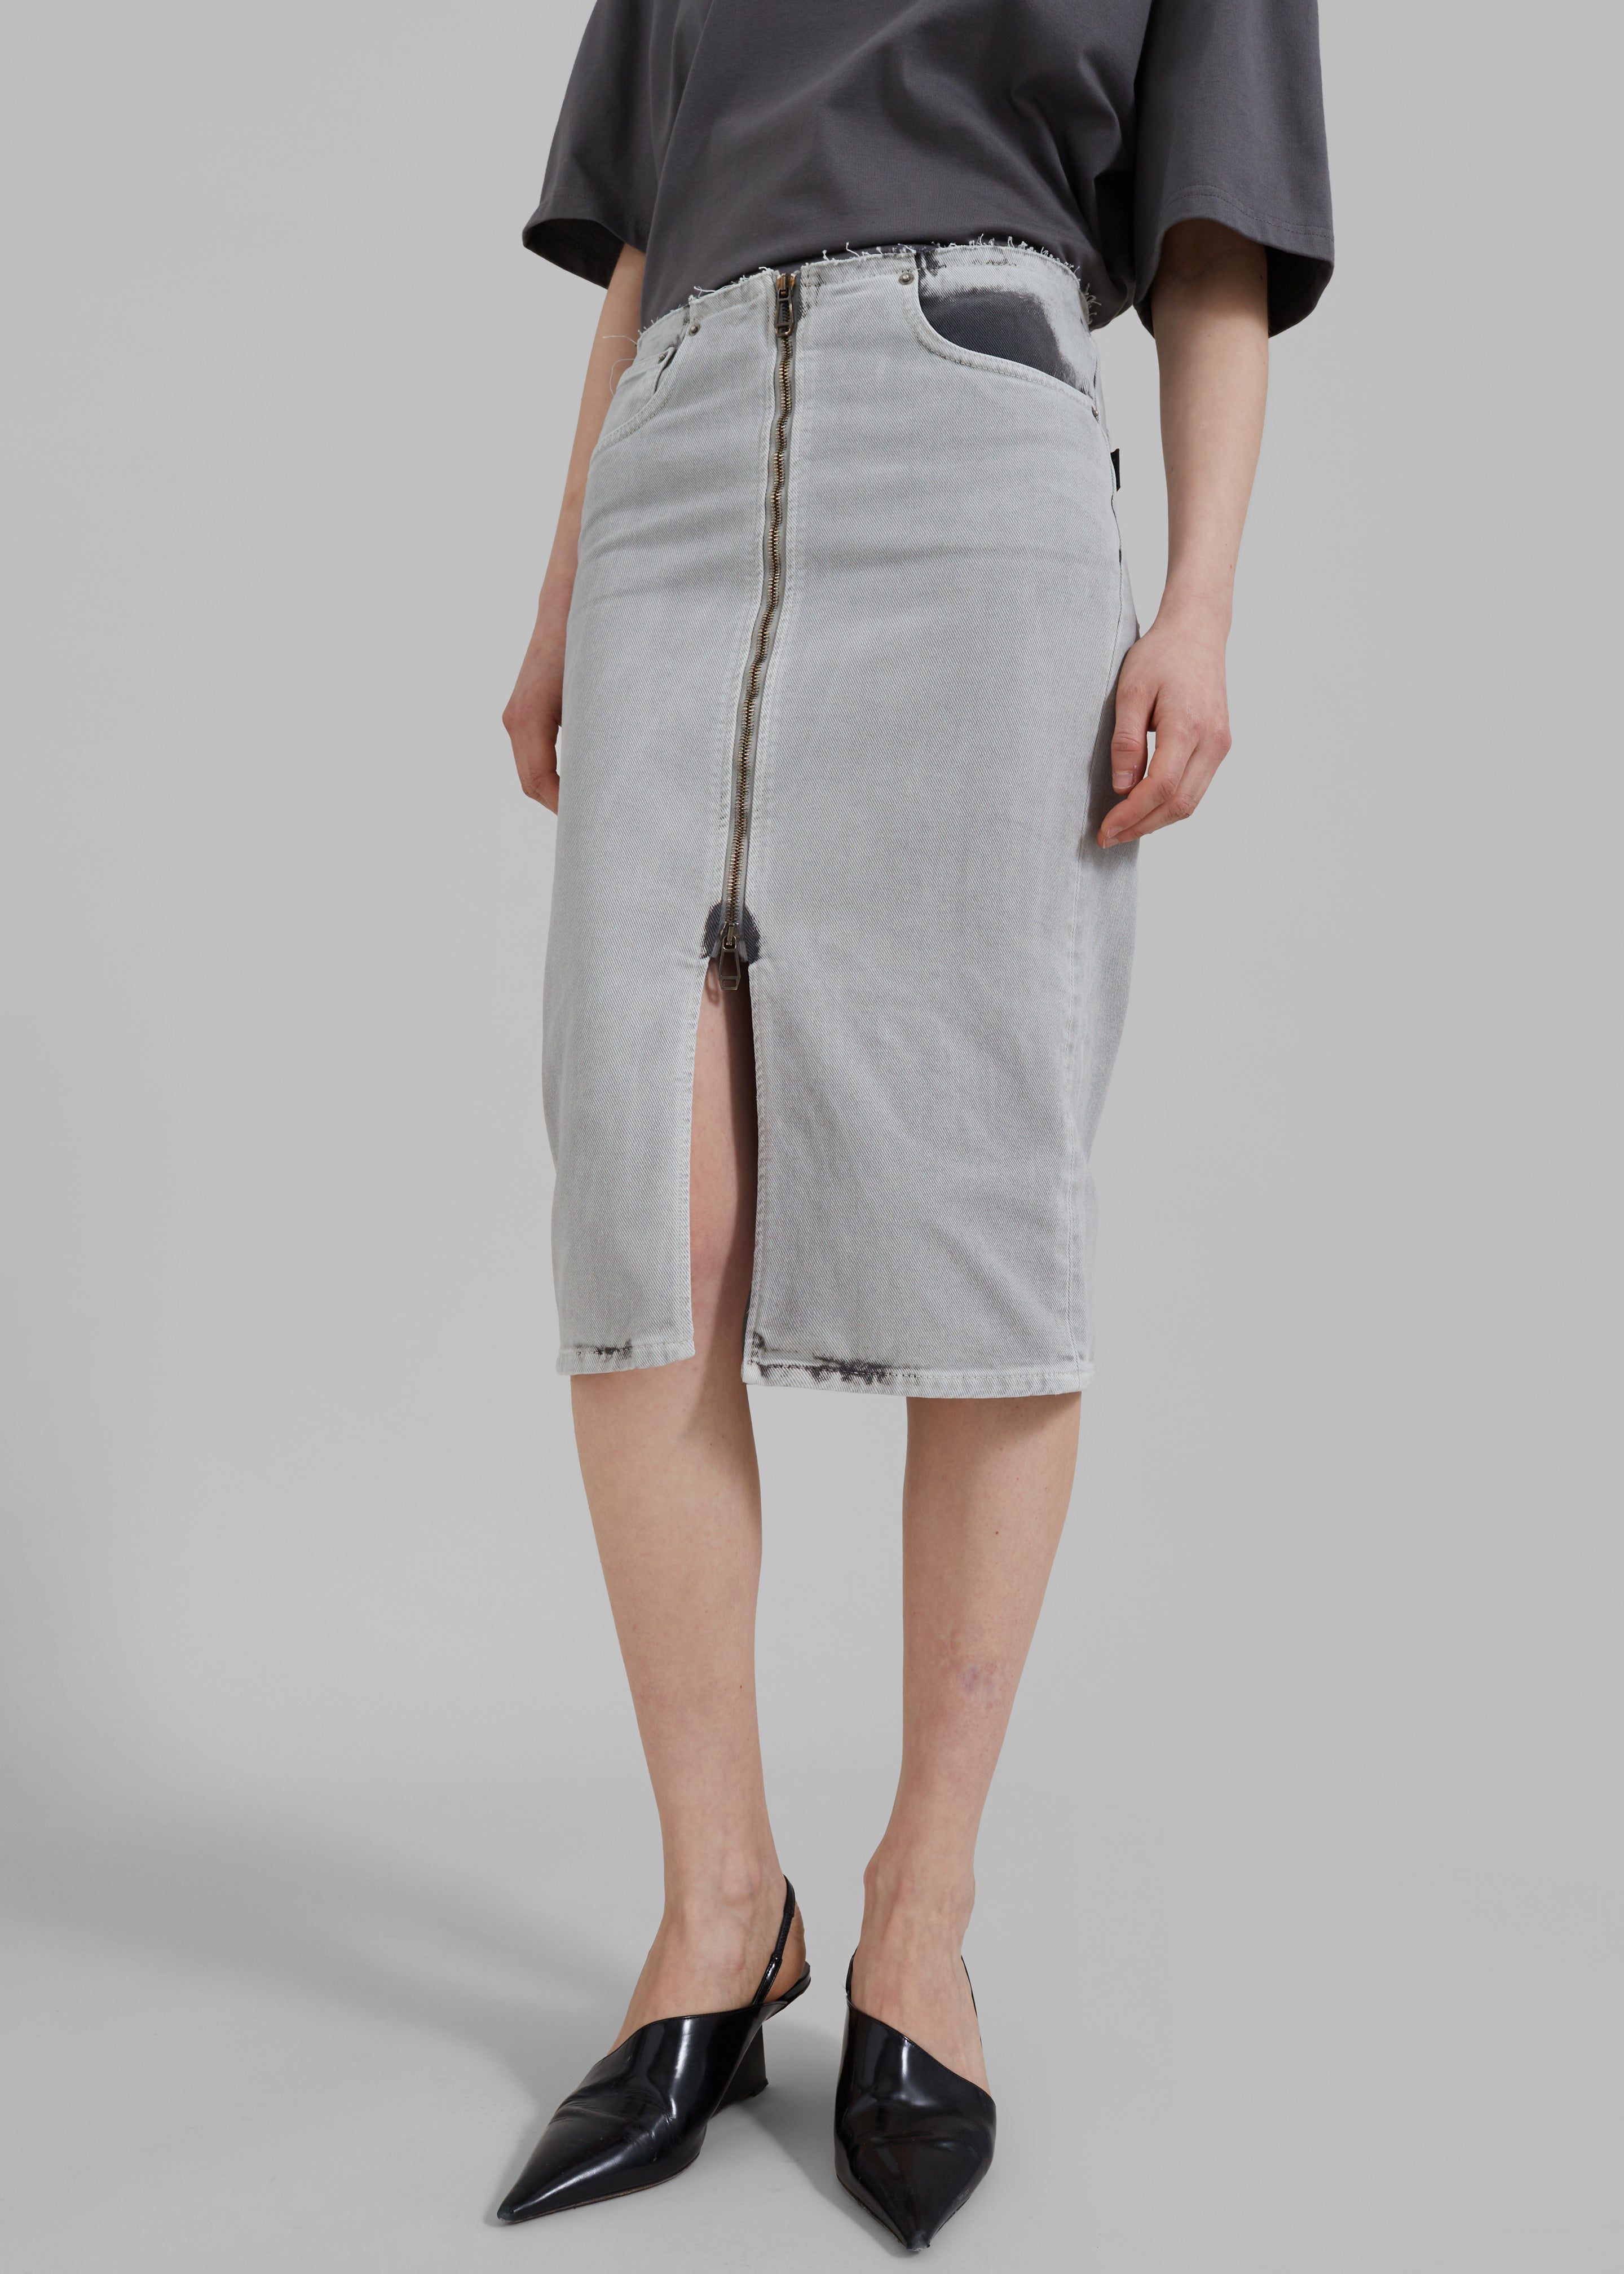 Haikure Tiger Skirt - Shifting Grey - 1